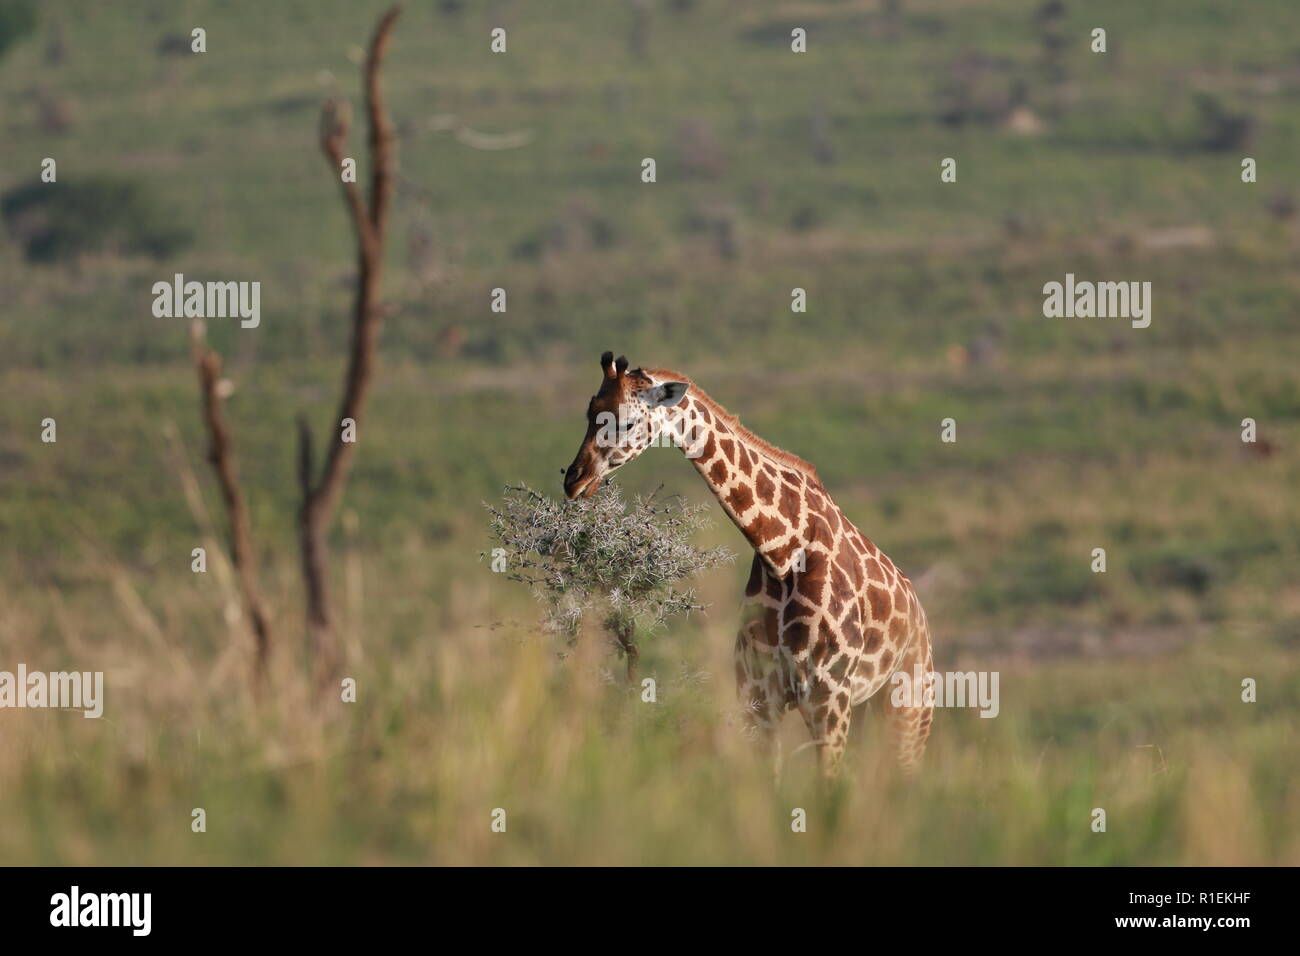 Giraffe Rothchild's eating Murchison Falls National Park Uganda Stock Photo